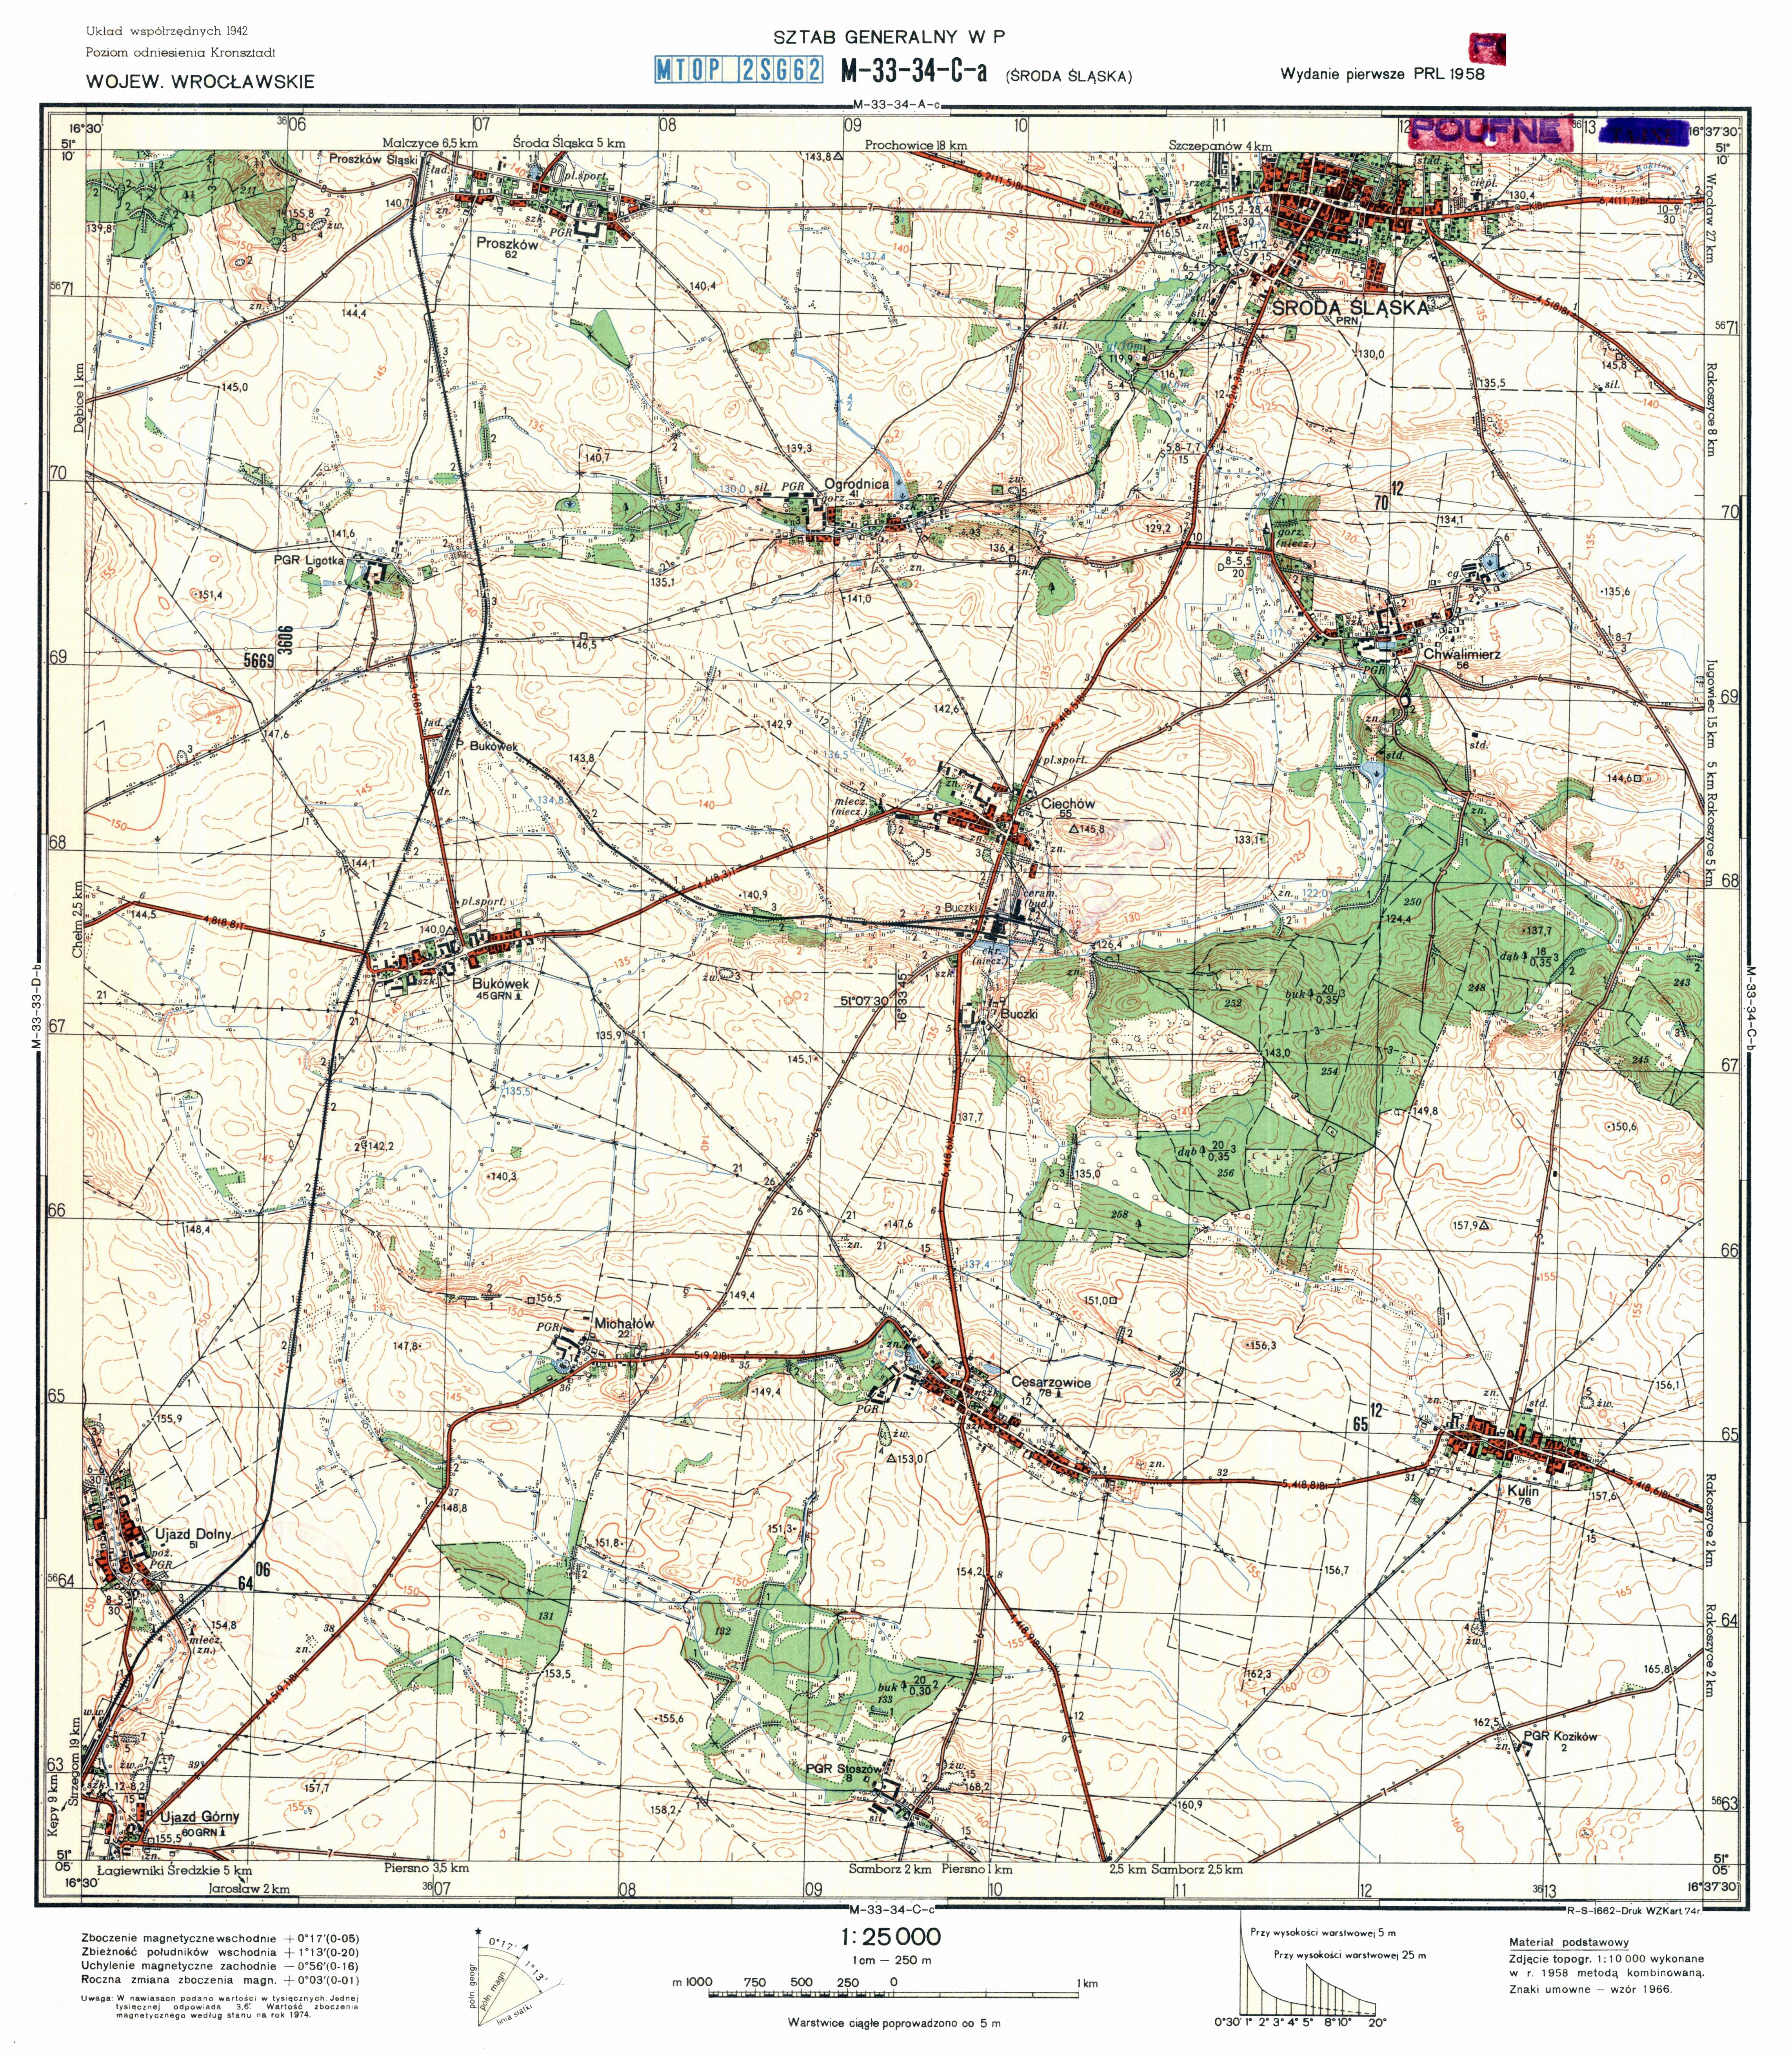 Mapy topograficzne LWP 1_25 000 - M-33-34-C-a_SRODA_SLASKA_1974.jpg